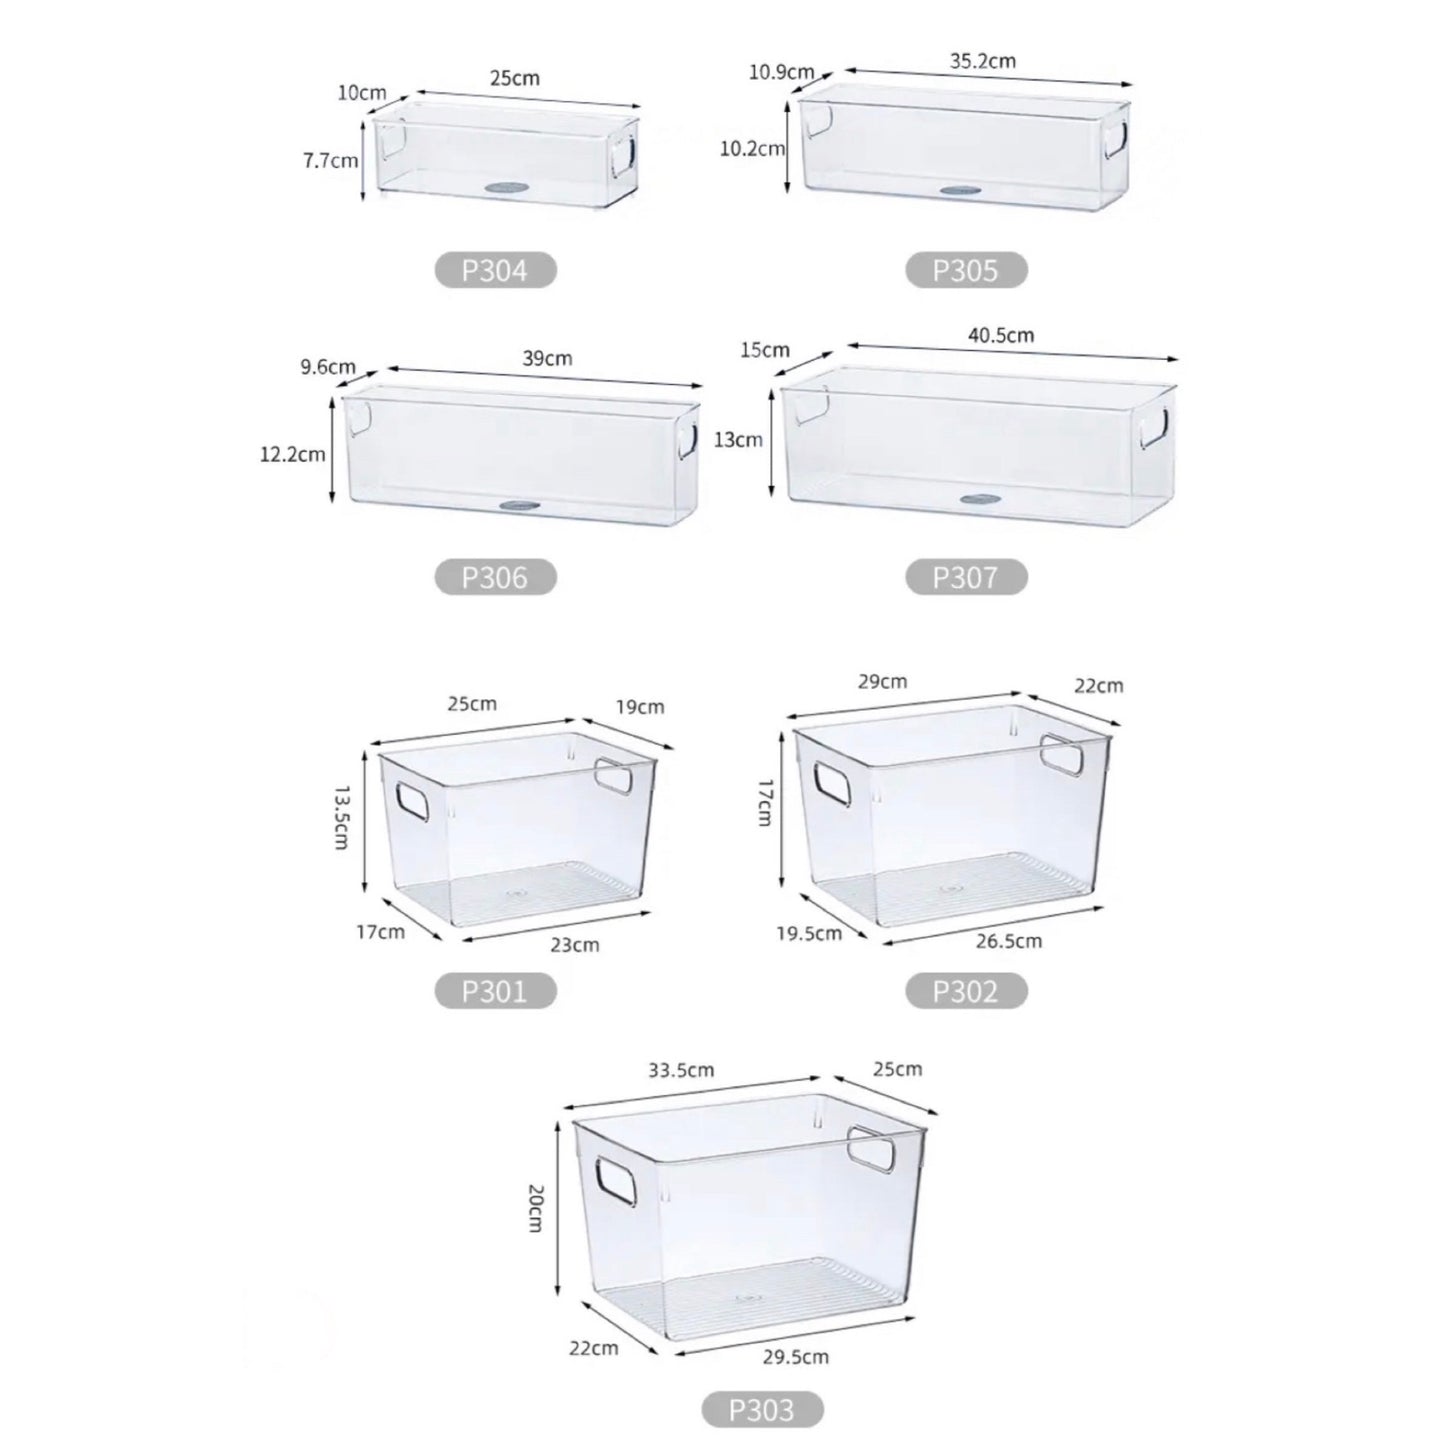 Technische Zeichnungen von sieben verschiedenen Modellen transparenter Aufbewahrungsboxen mit Maßangaben. Die Modelle reichen von länglichen Boxen für schmale Räume bis hin zu größeren, quaderförmigen Behältern. Jedes Modell verfügt über Griffe und ist für die Verwendung in verschiedenen Räumlichkeiten wie Küche, Badezimmer oder Büro konzipiert.